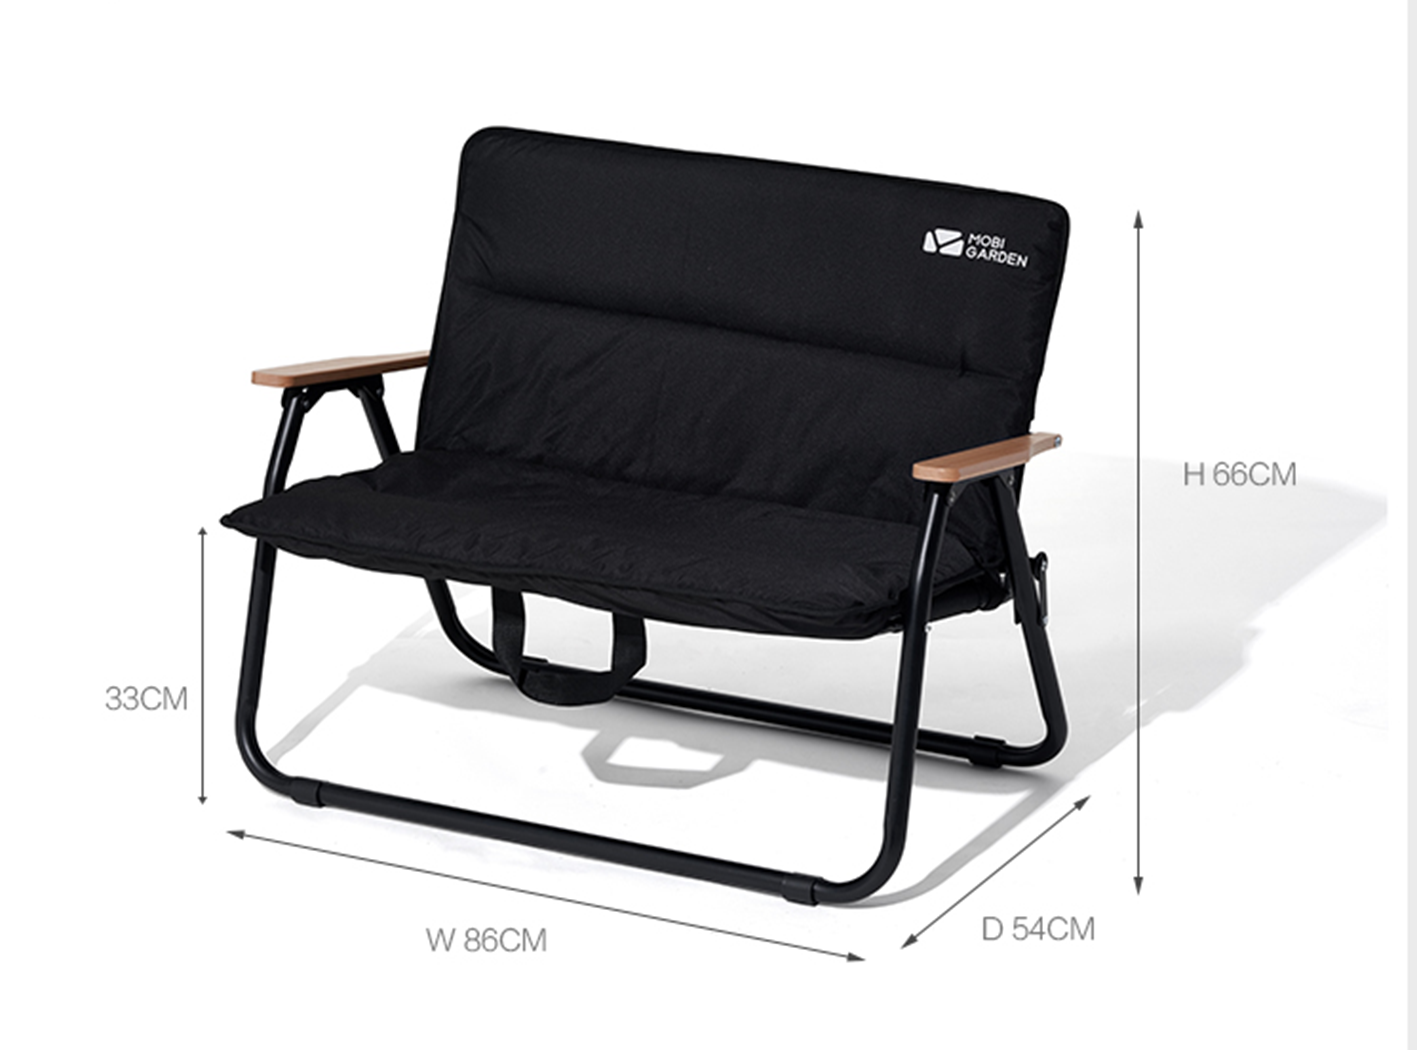 Mobi Garden Yun Mu Double Chair - Black